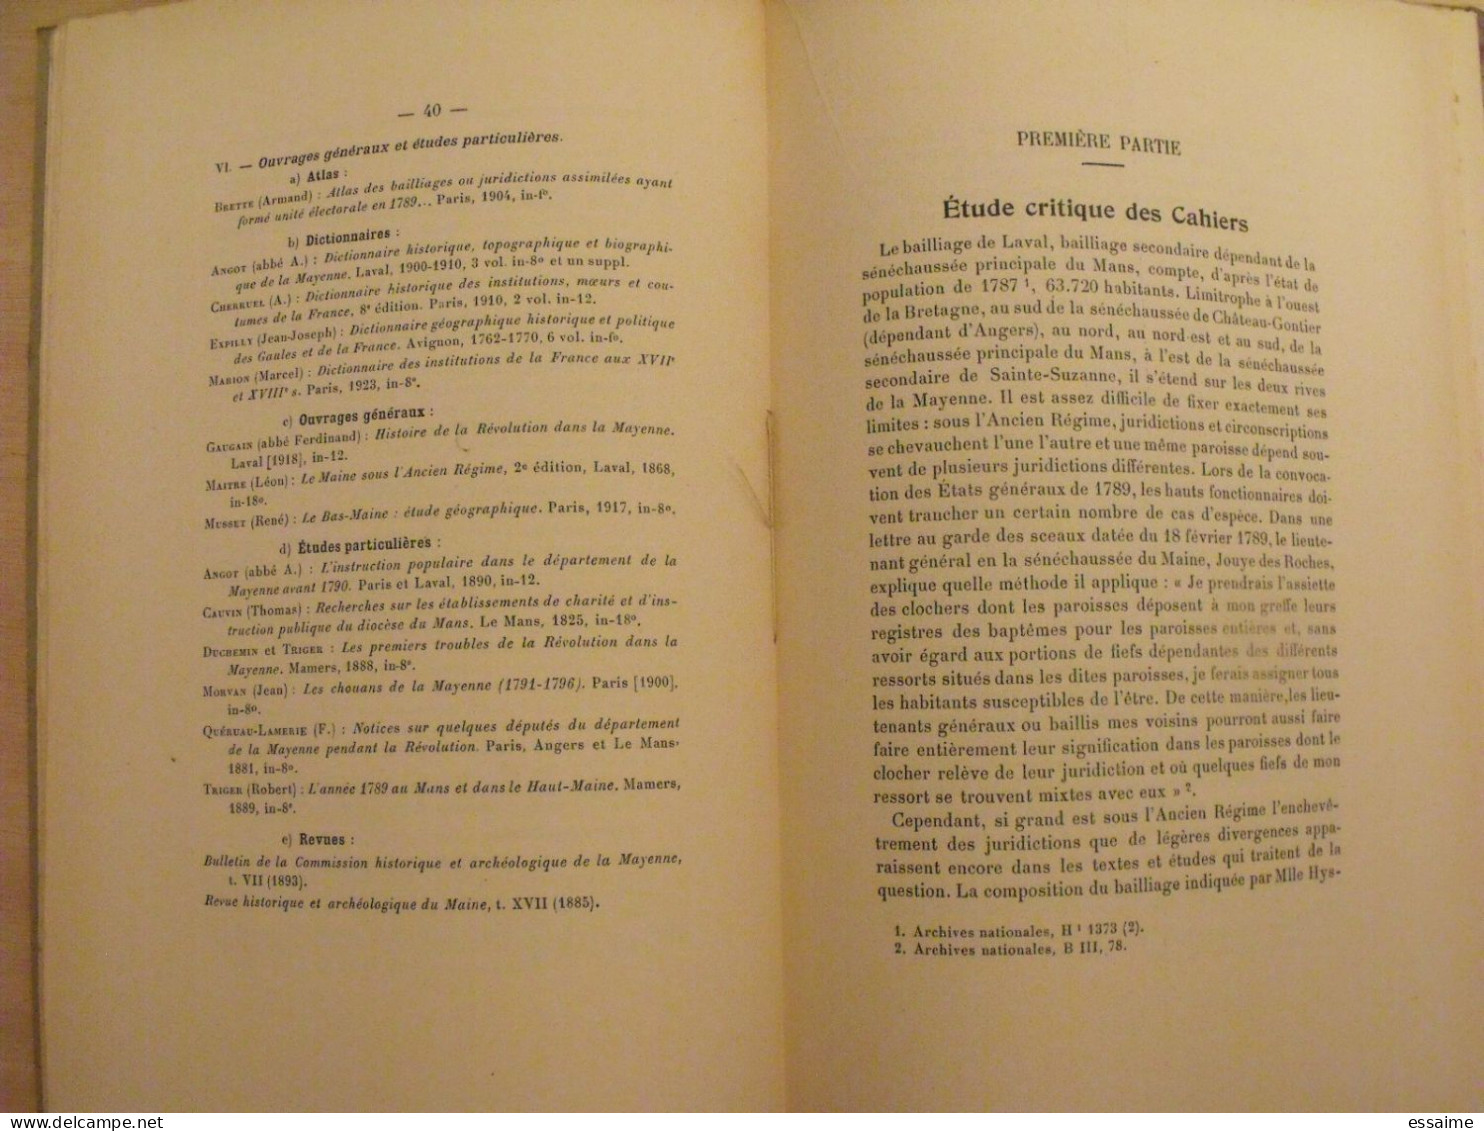 bulletin historique et archéologique de la Mayenne. 1953, tome LXIII-227. Laval Chateau-Gontier. Goupil.